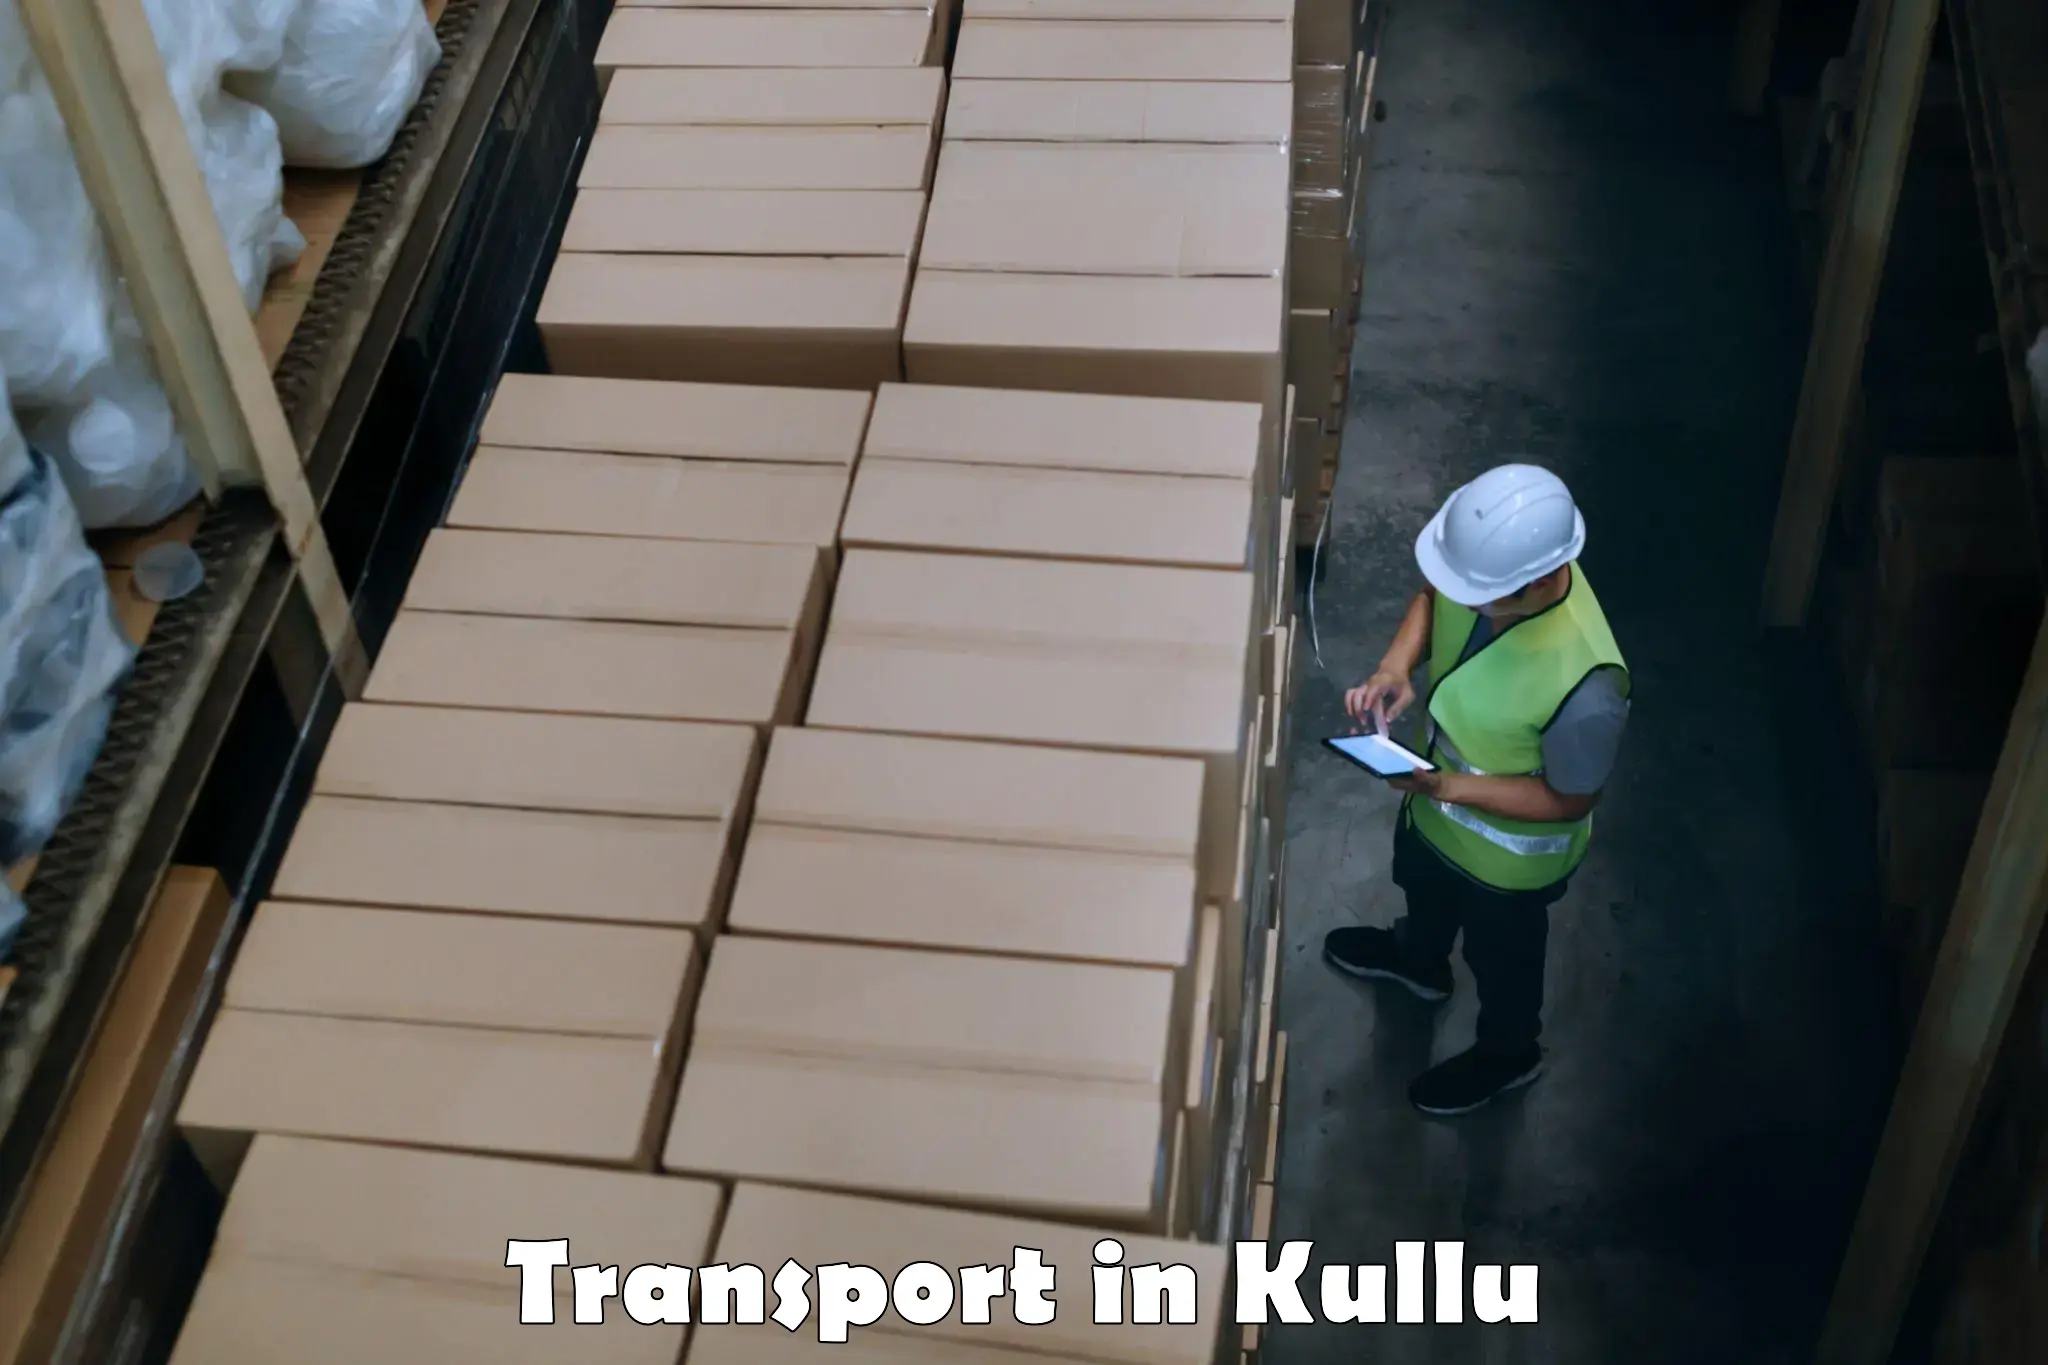 Parcel transport services in Kullu